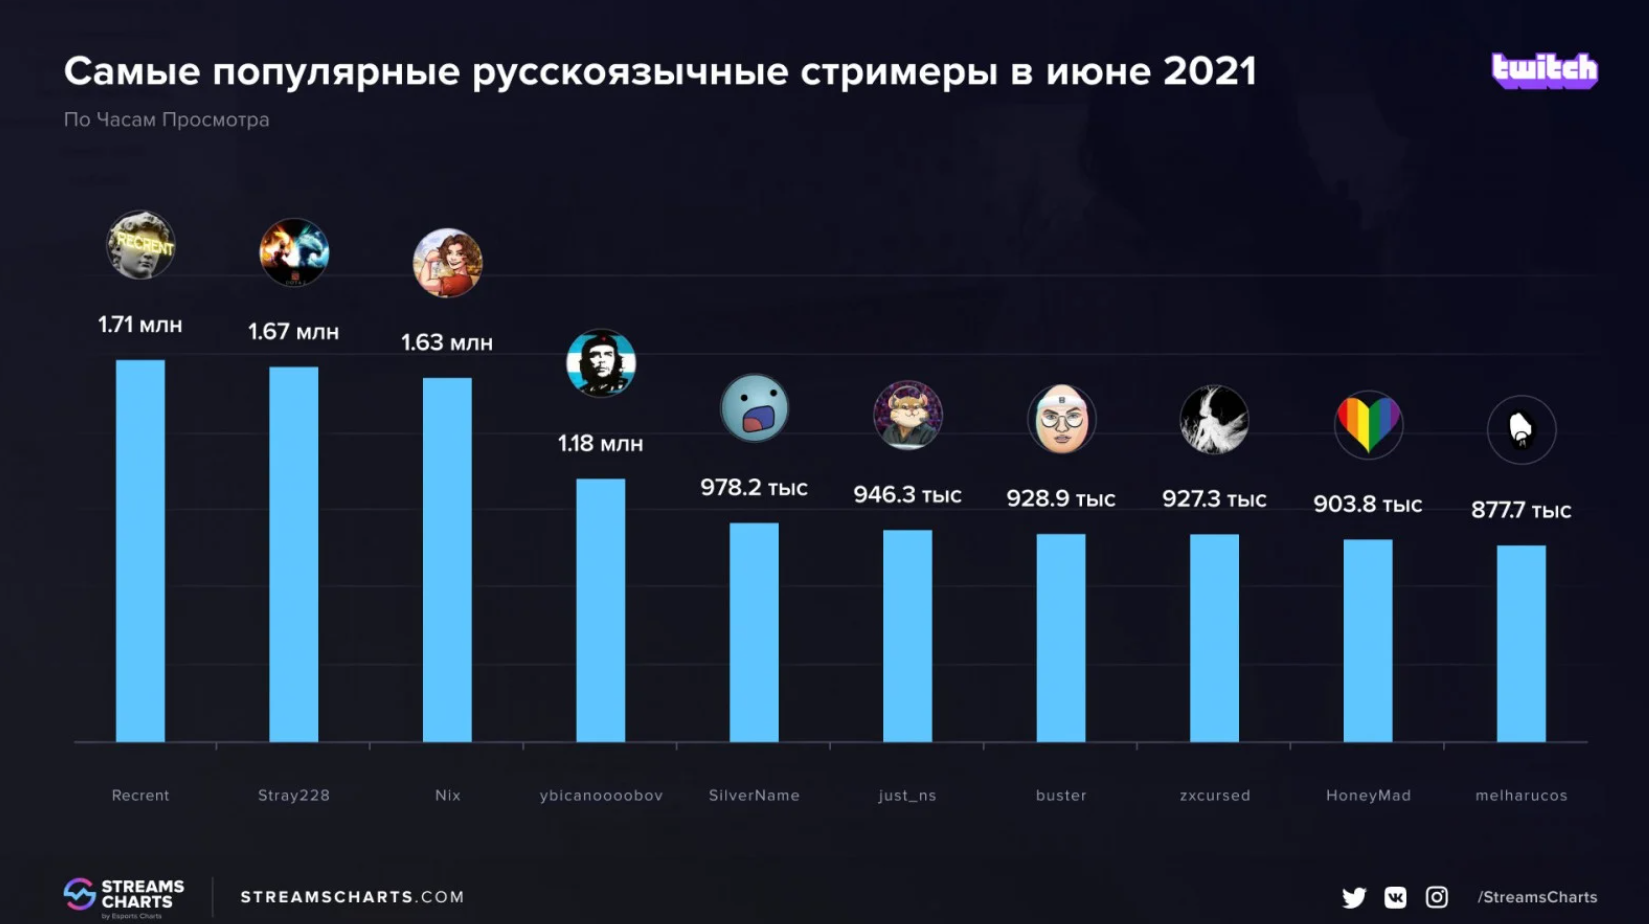 Cамые популярные русскоязычные стримеры в июне 2021 года